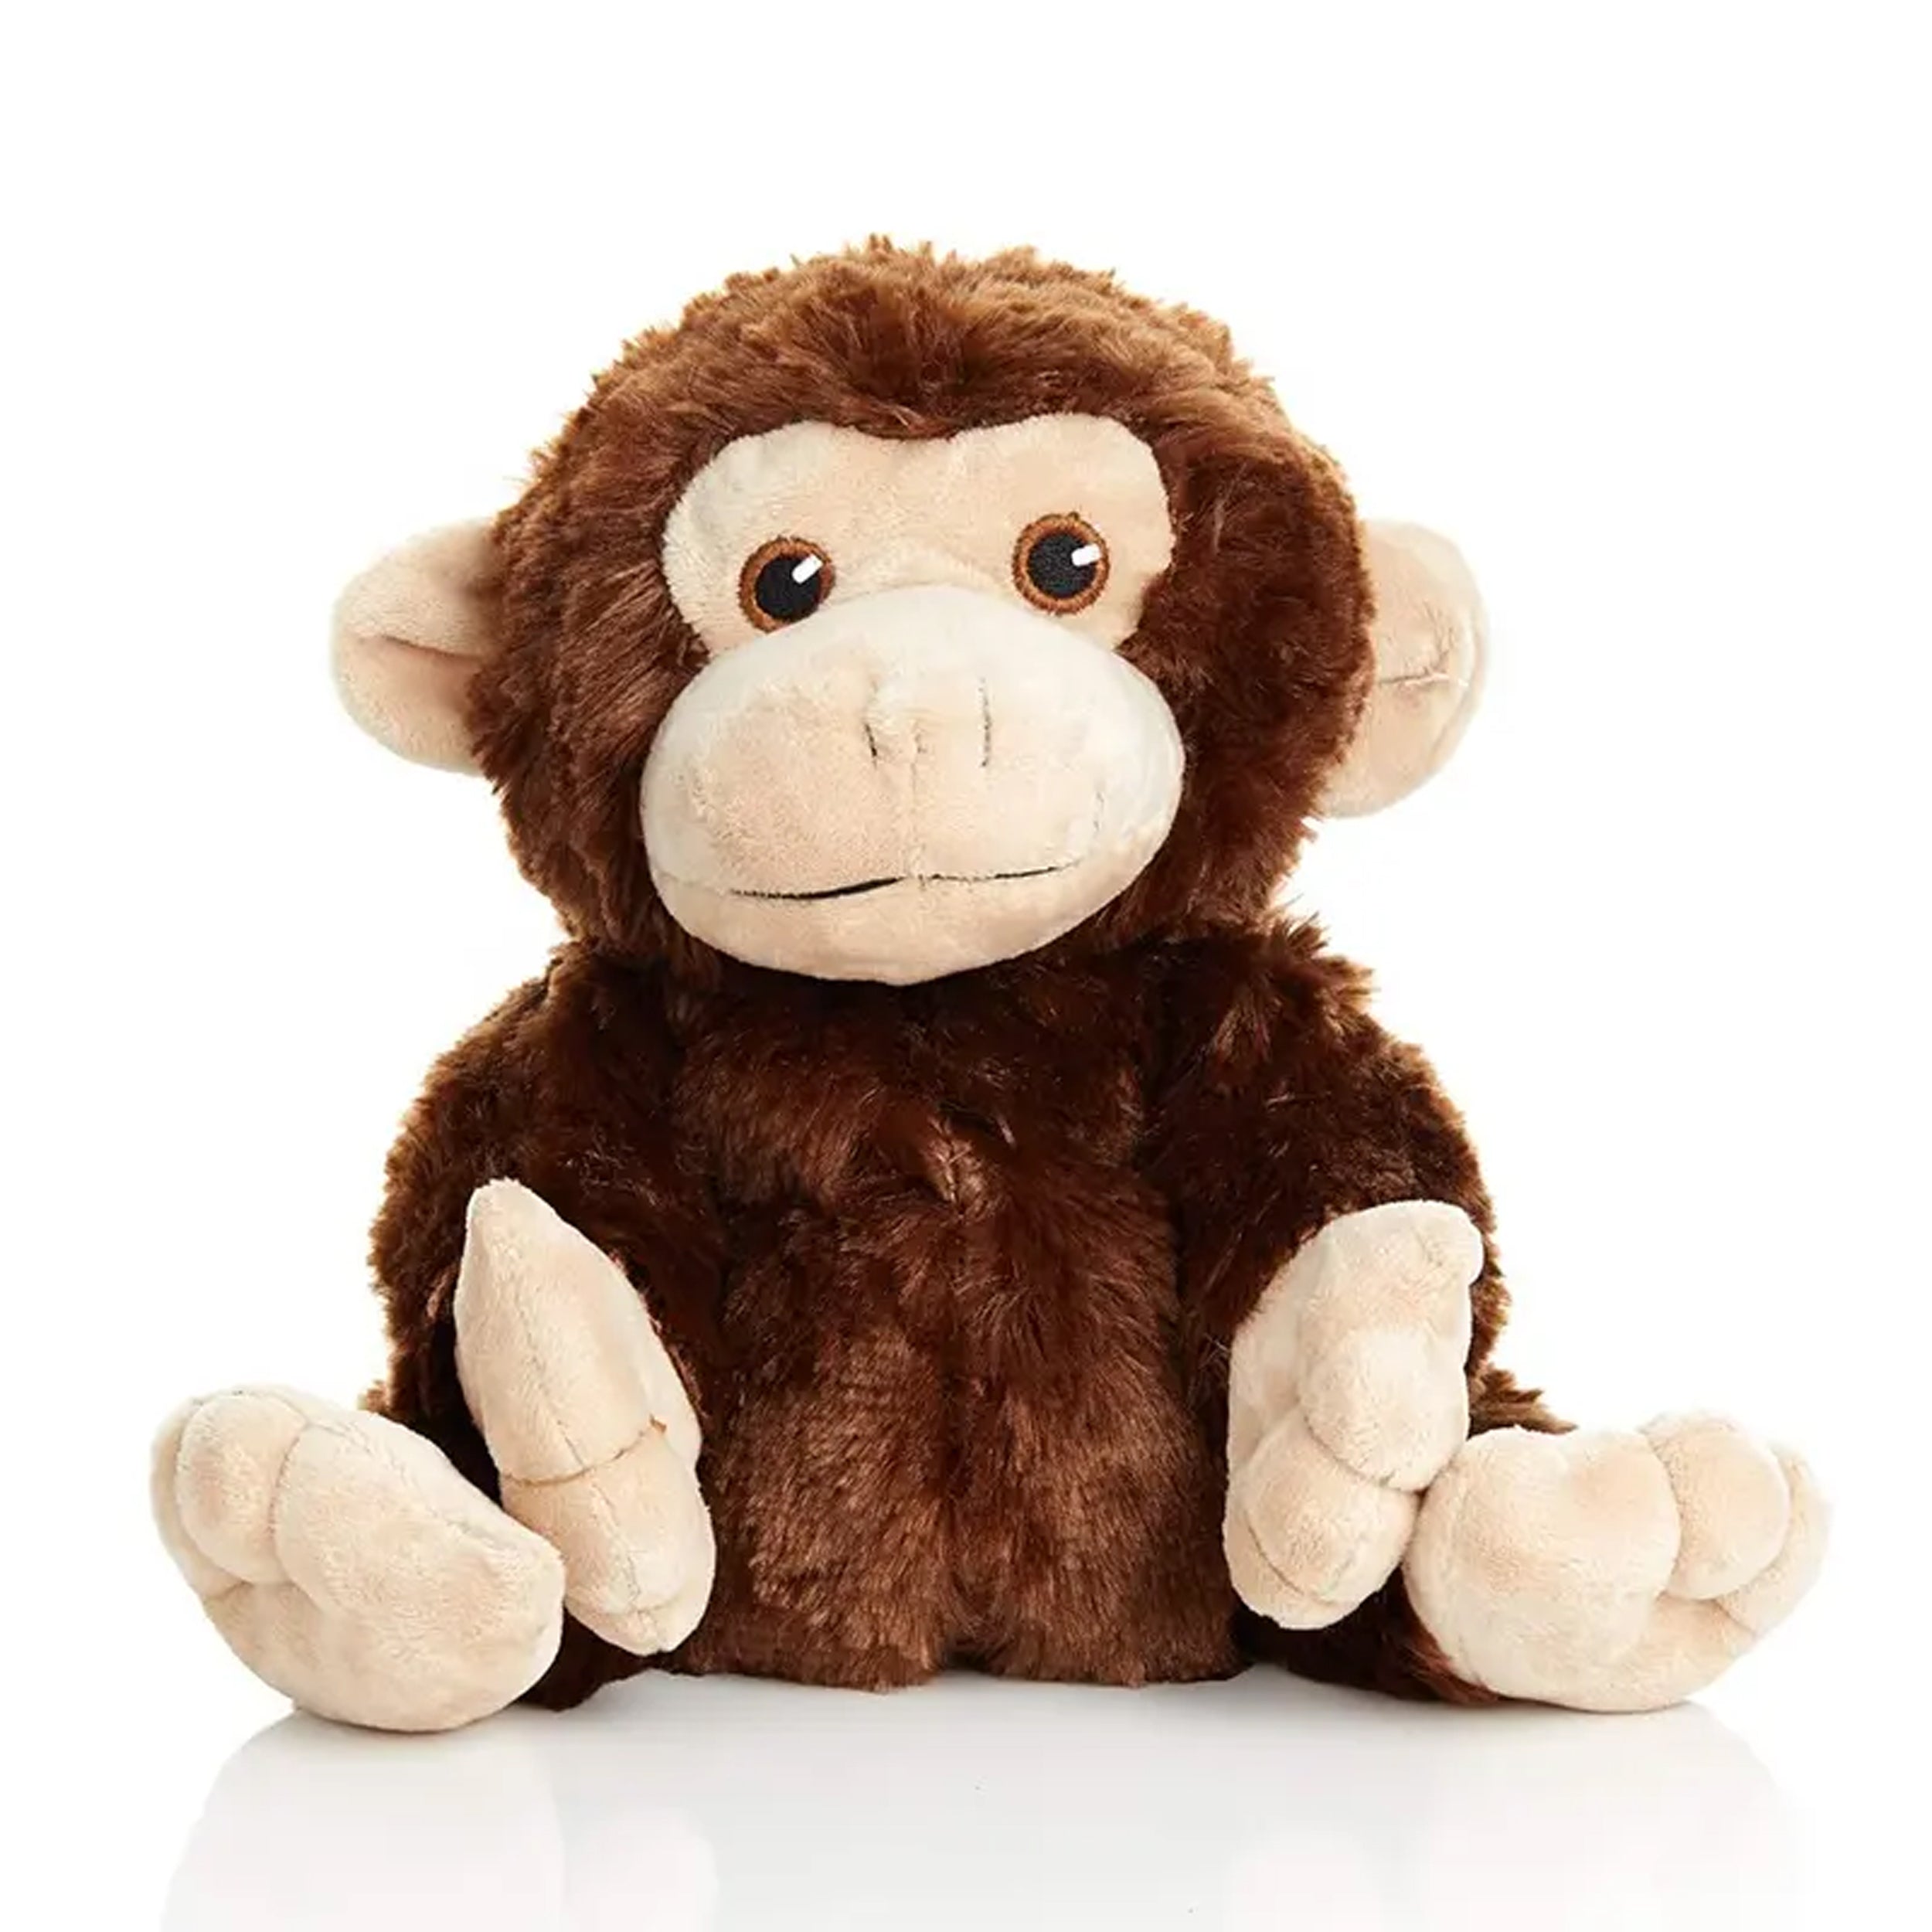 Plush Monkey Stuffed Animals